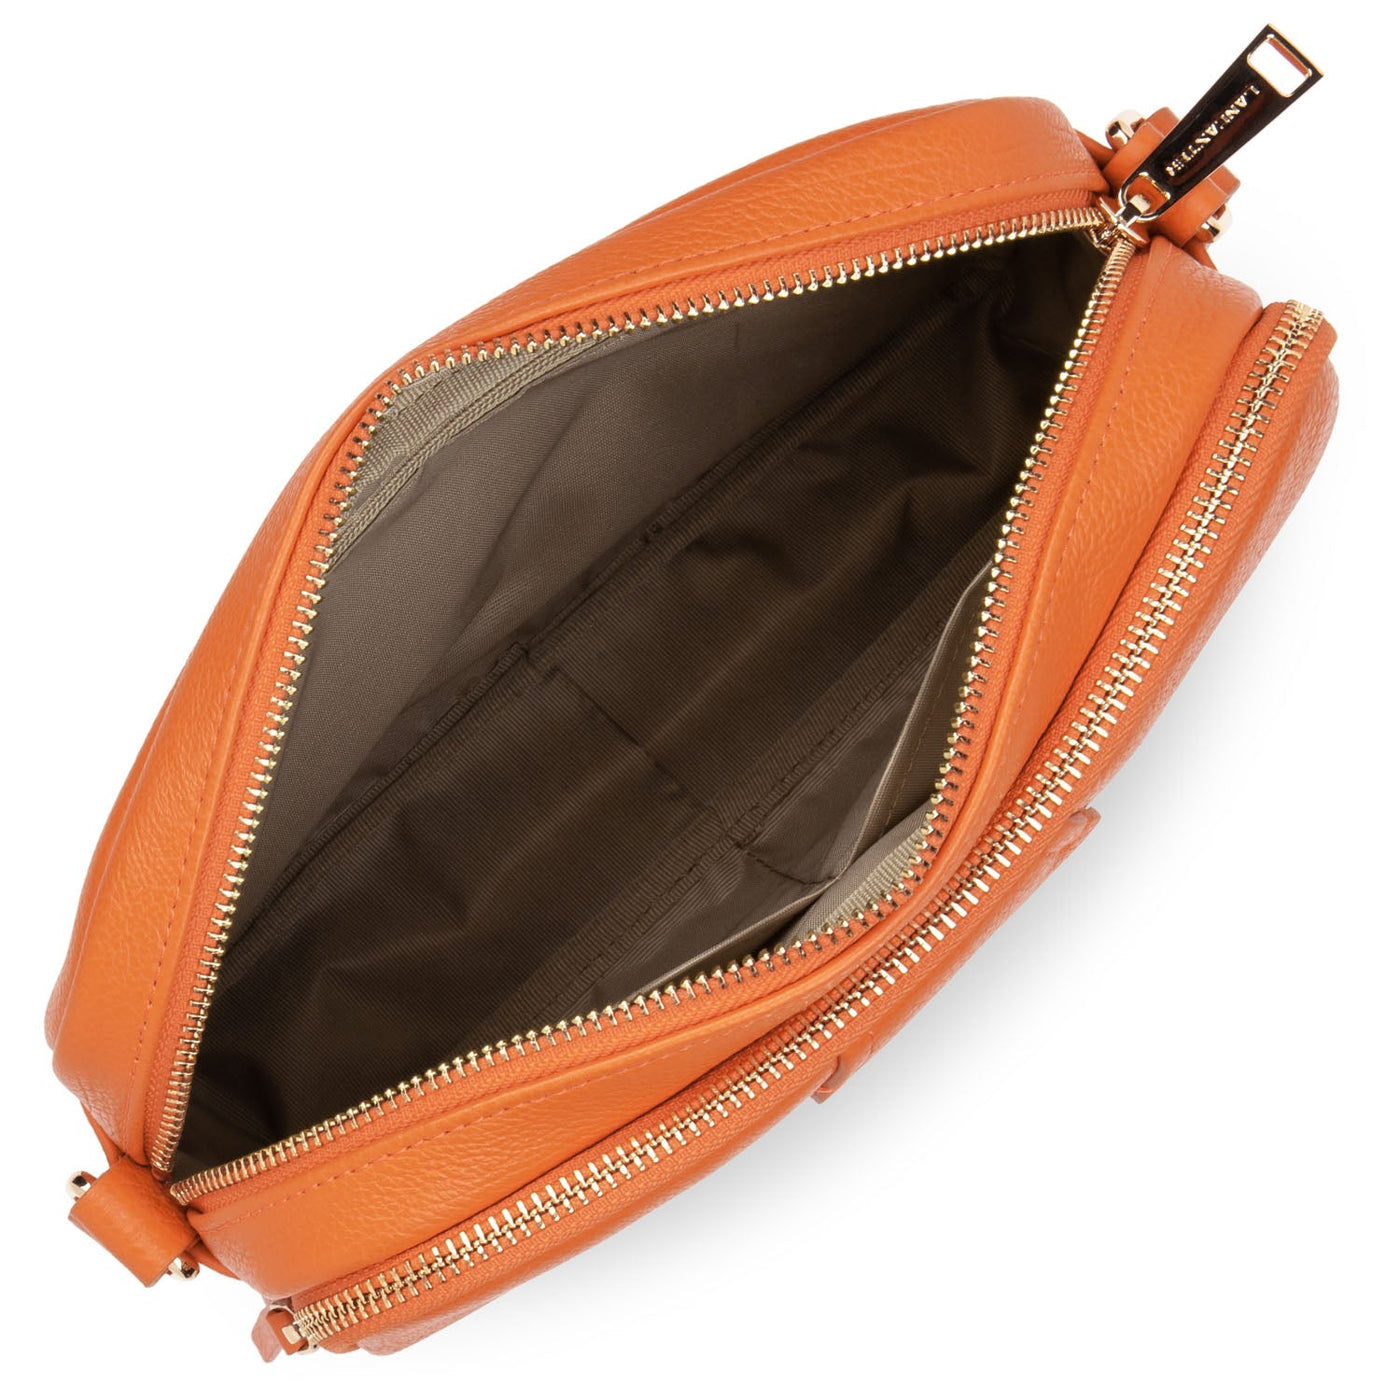 m crossbody bag - dune #couleur_orange